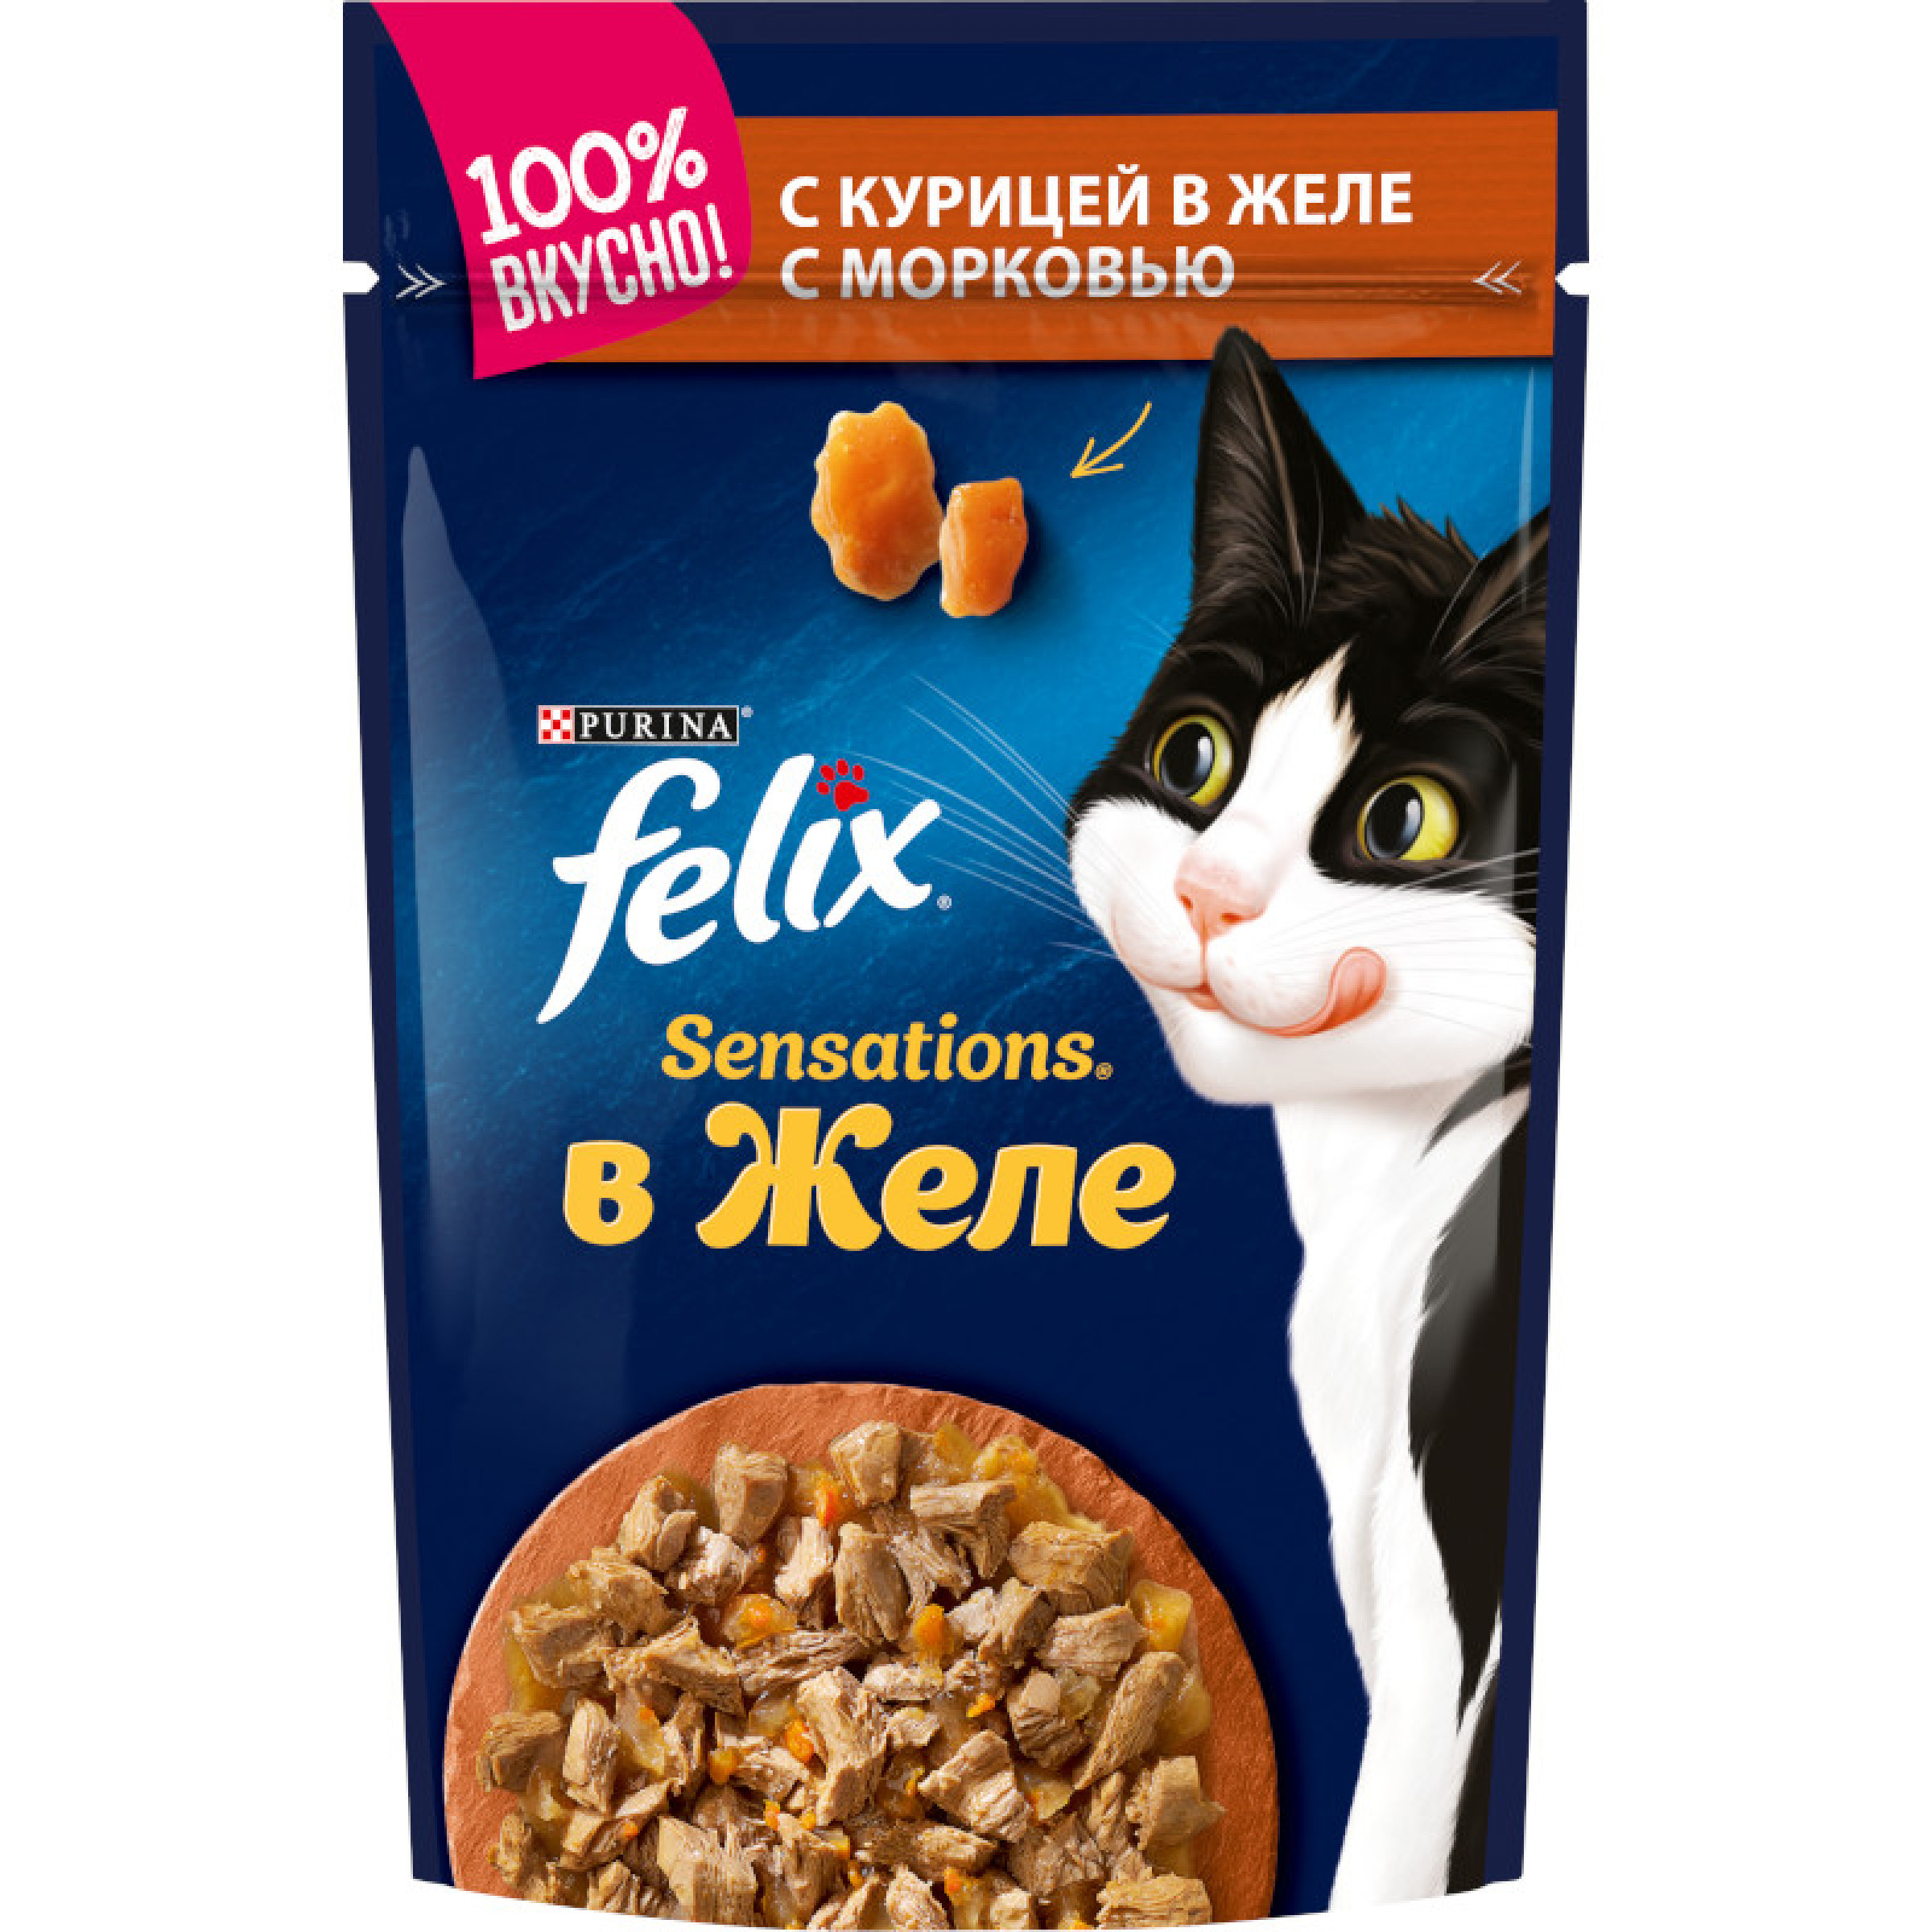 Влажный корм - желе для взрослых кошек Sensationsс курицей в желе с морковью Felix 85 г